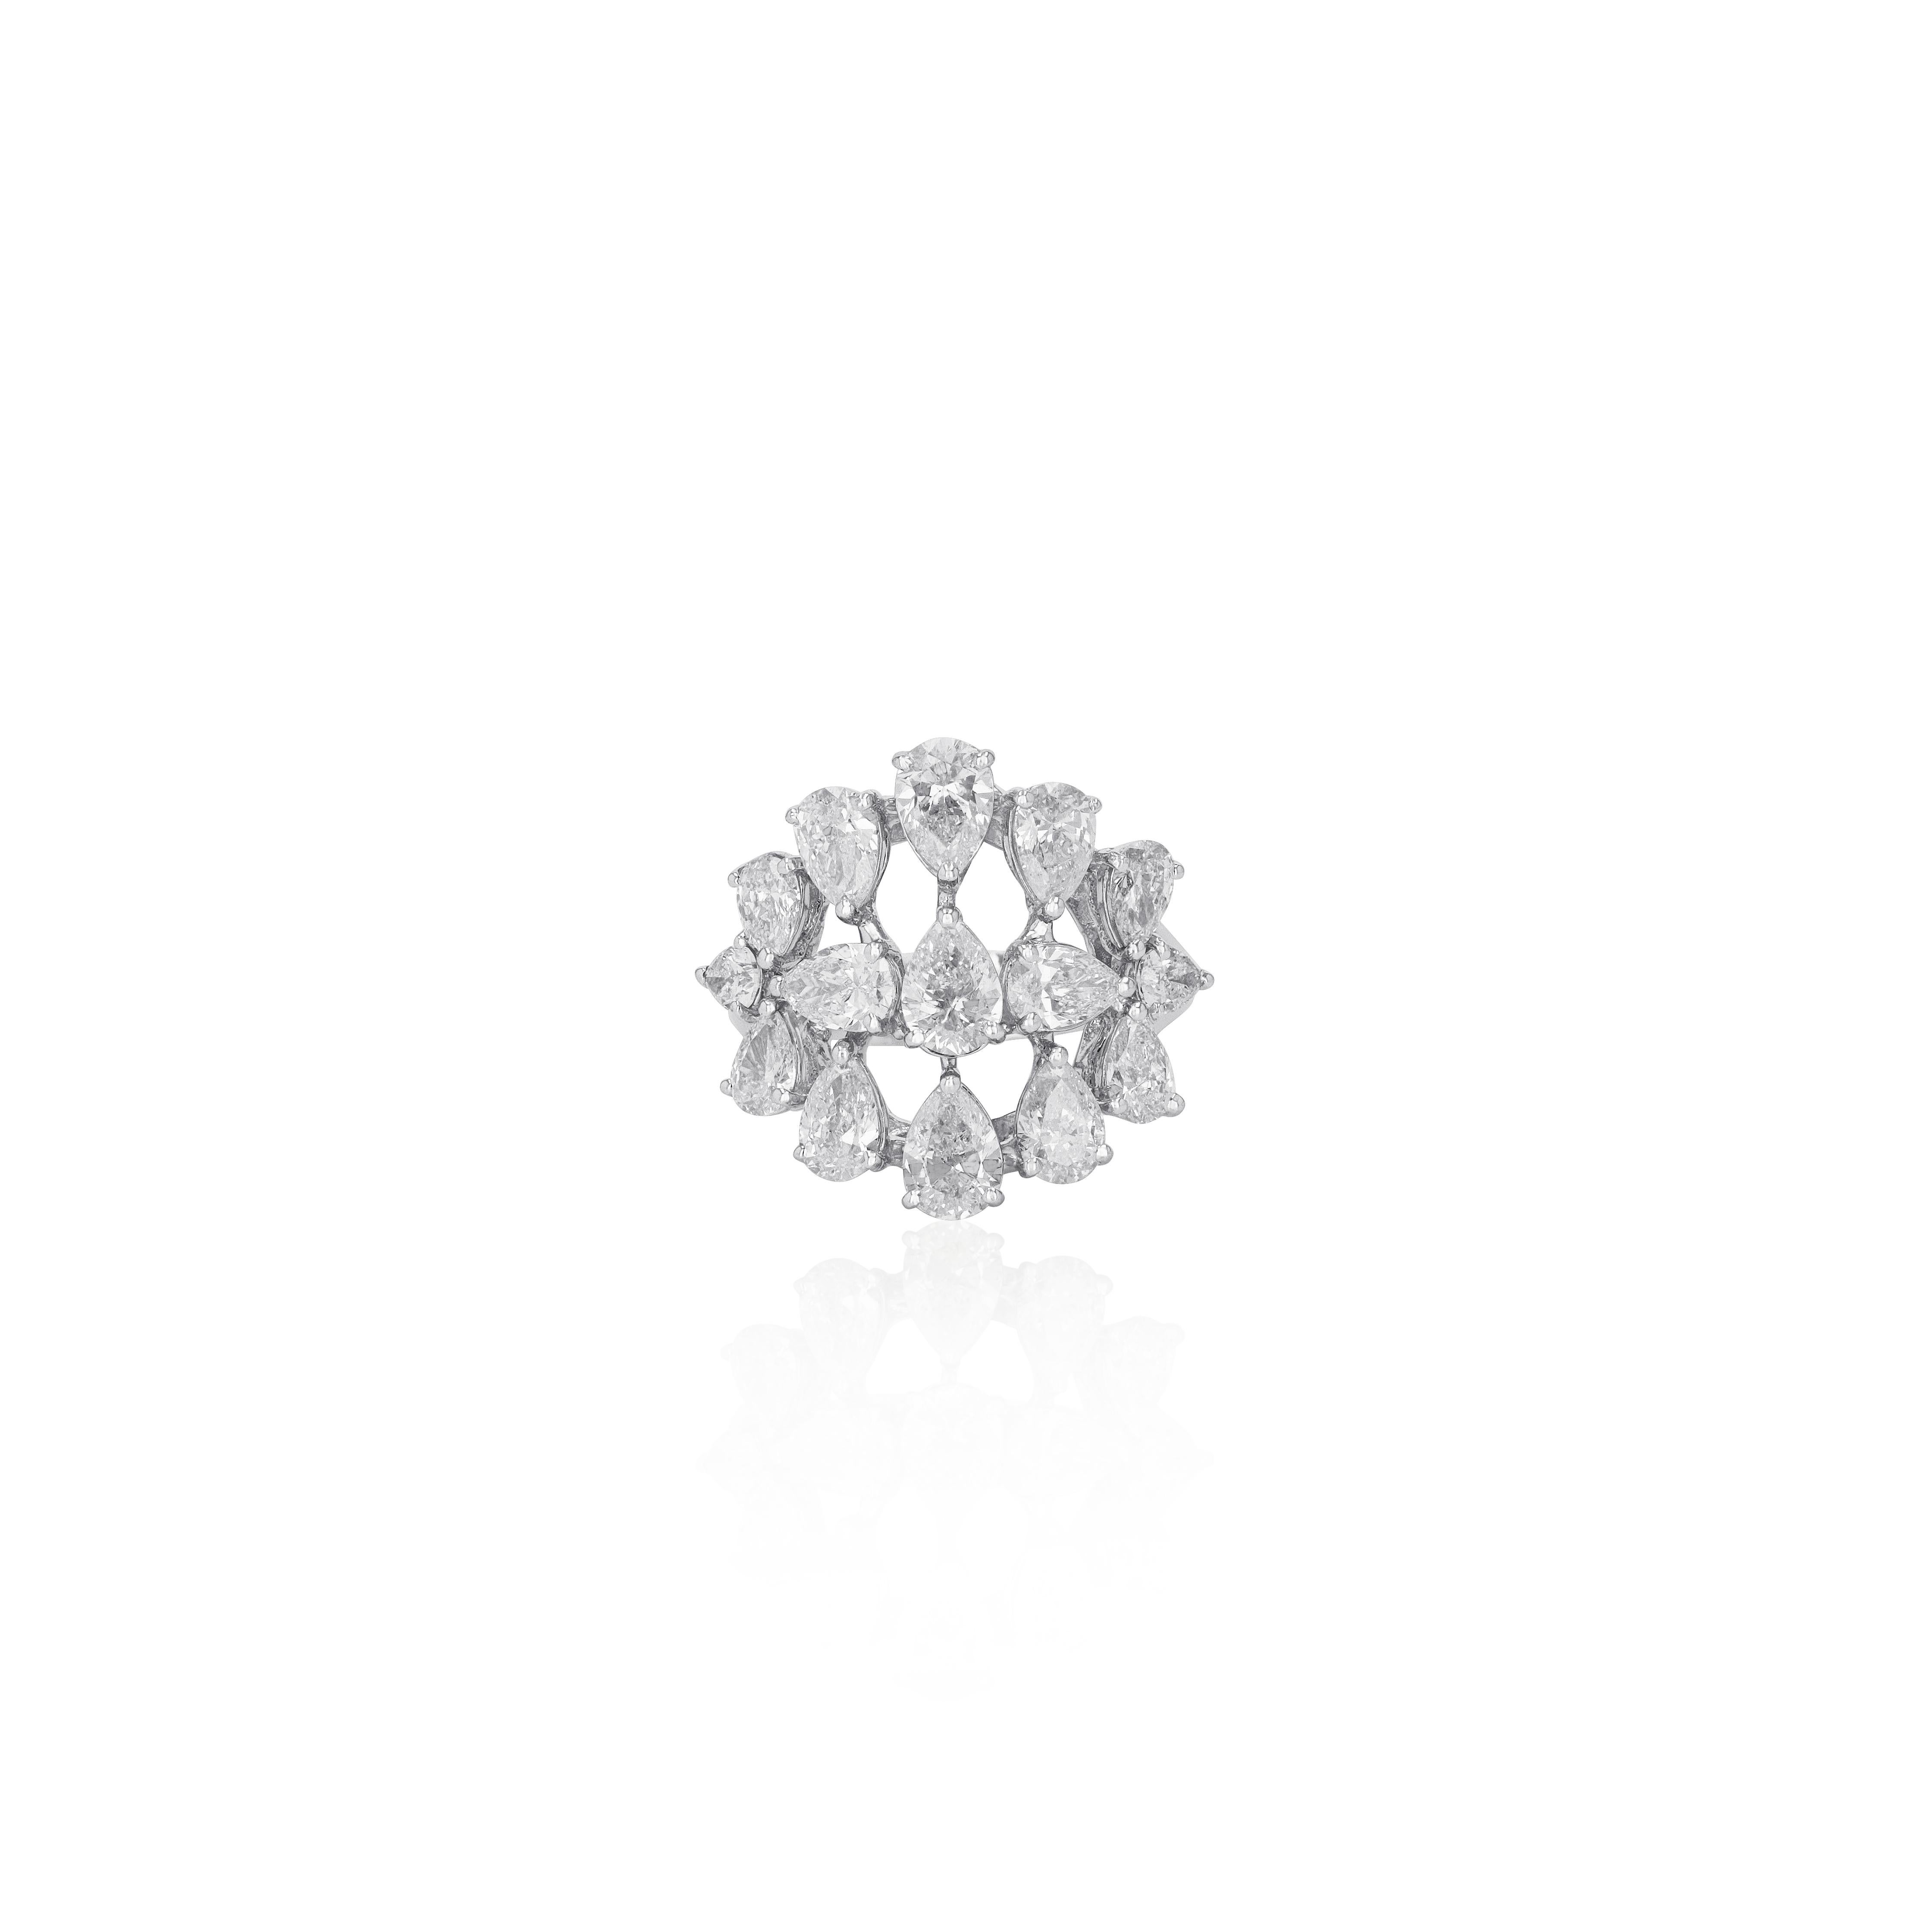 Romantic Amwaj Jewelry White Diamond Ring in 18 Karat White Gold